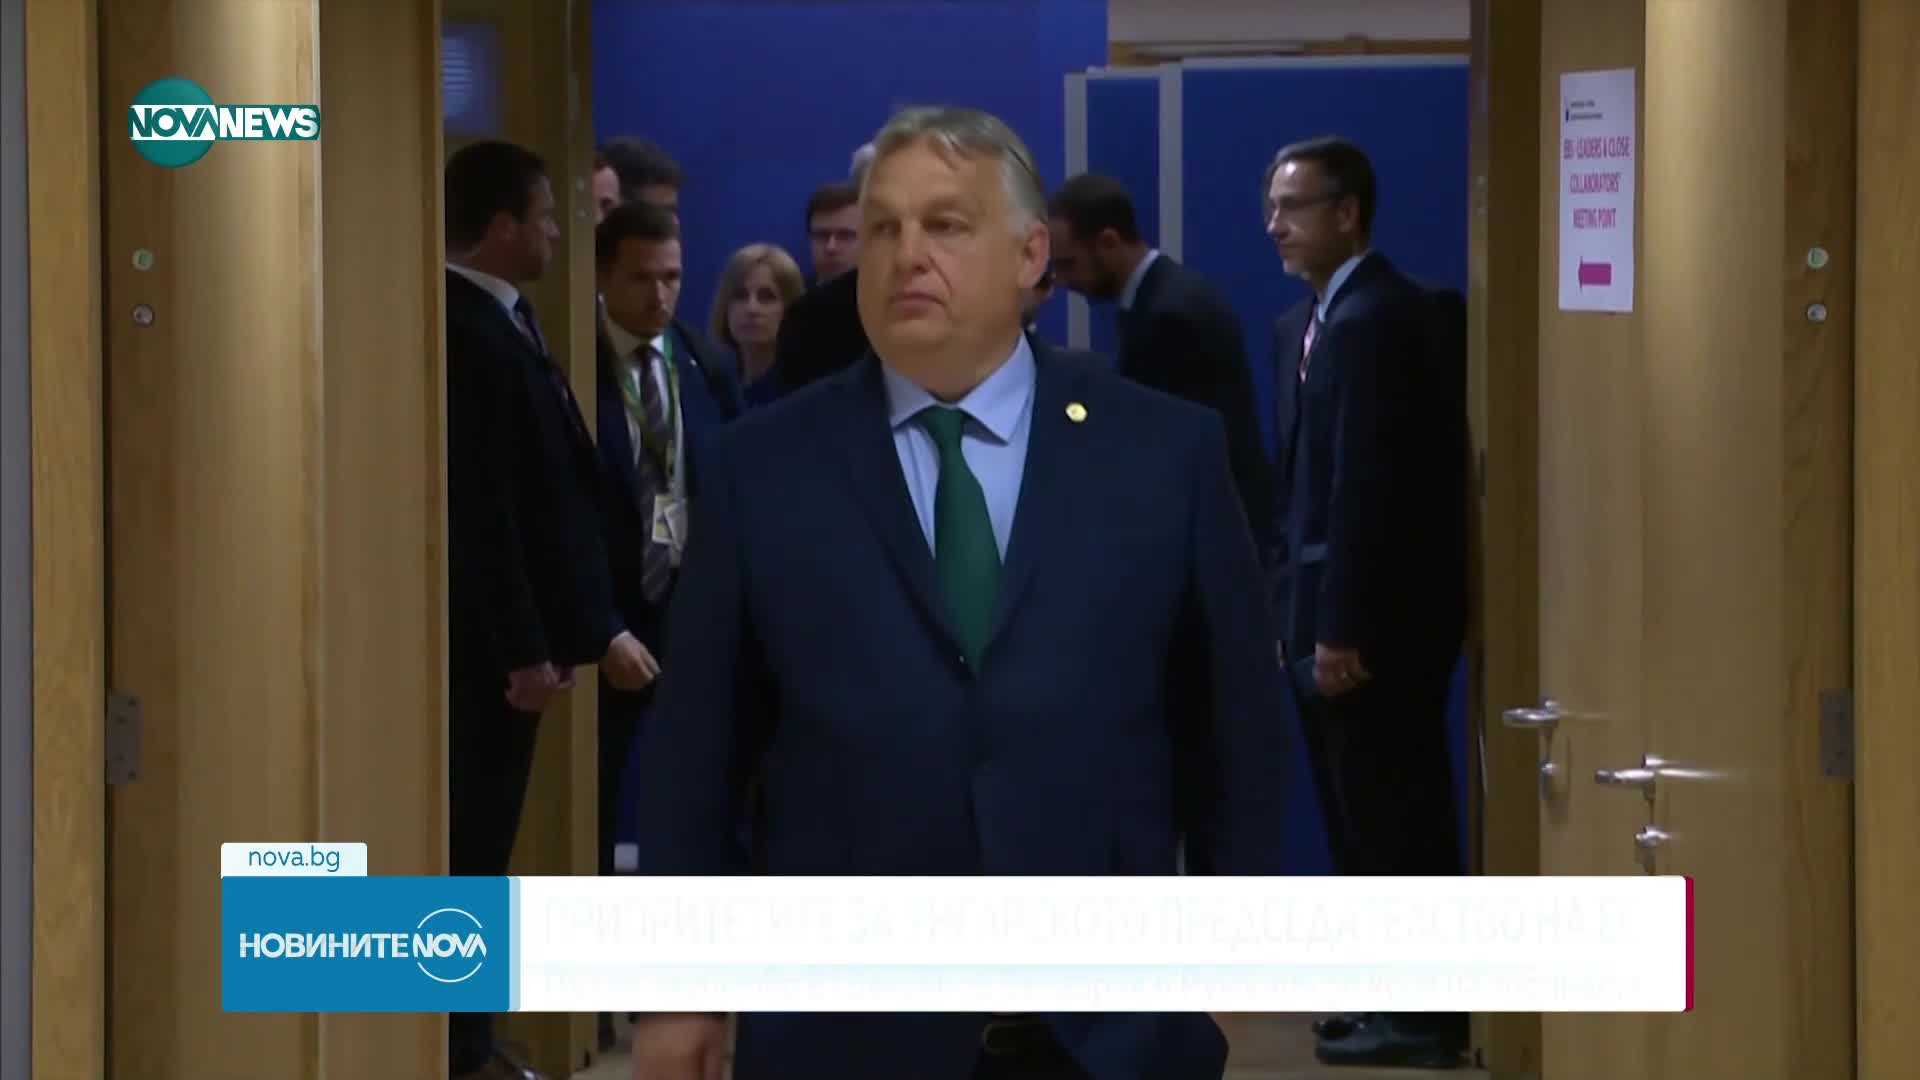 "Да направим Европа отново велика" - лозунгът на предстоящото унгарско председателство на съвета на